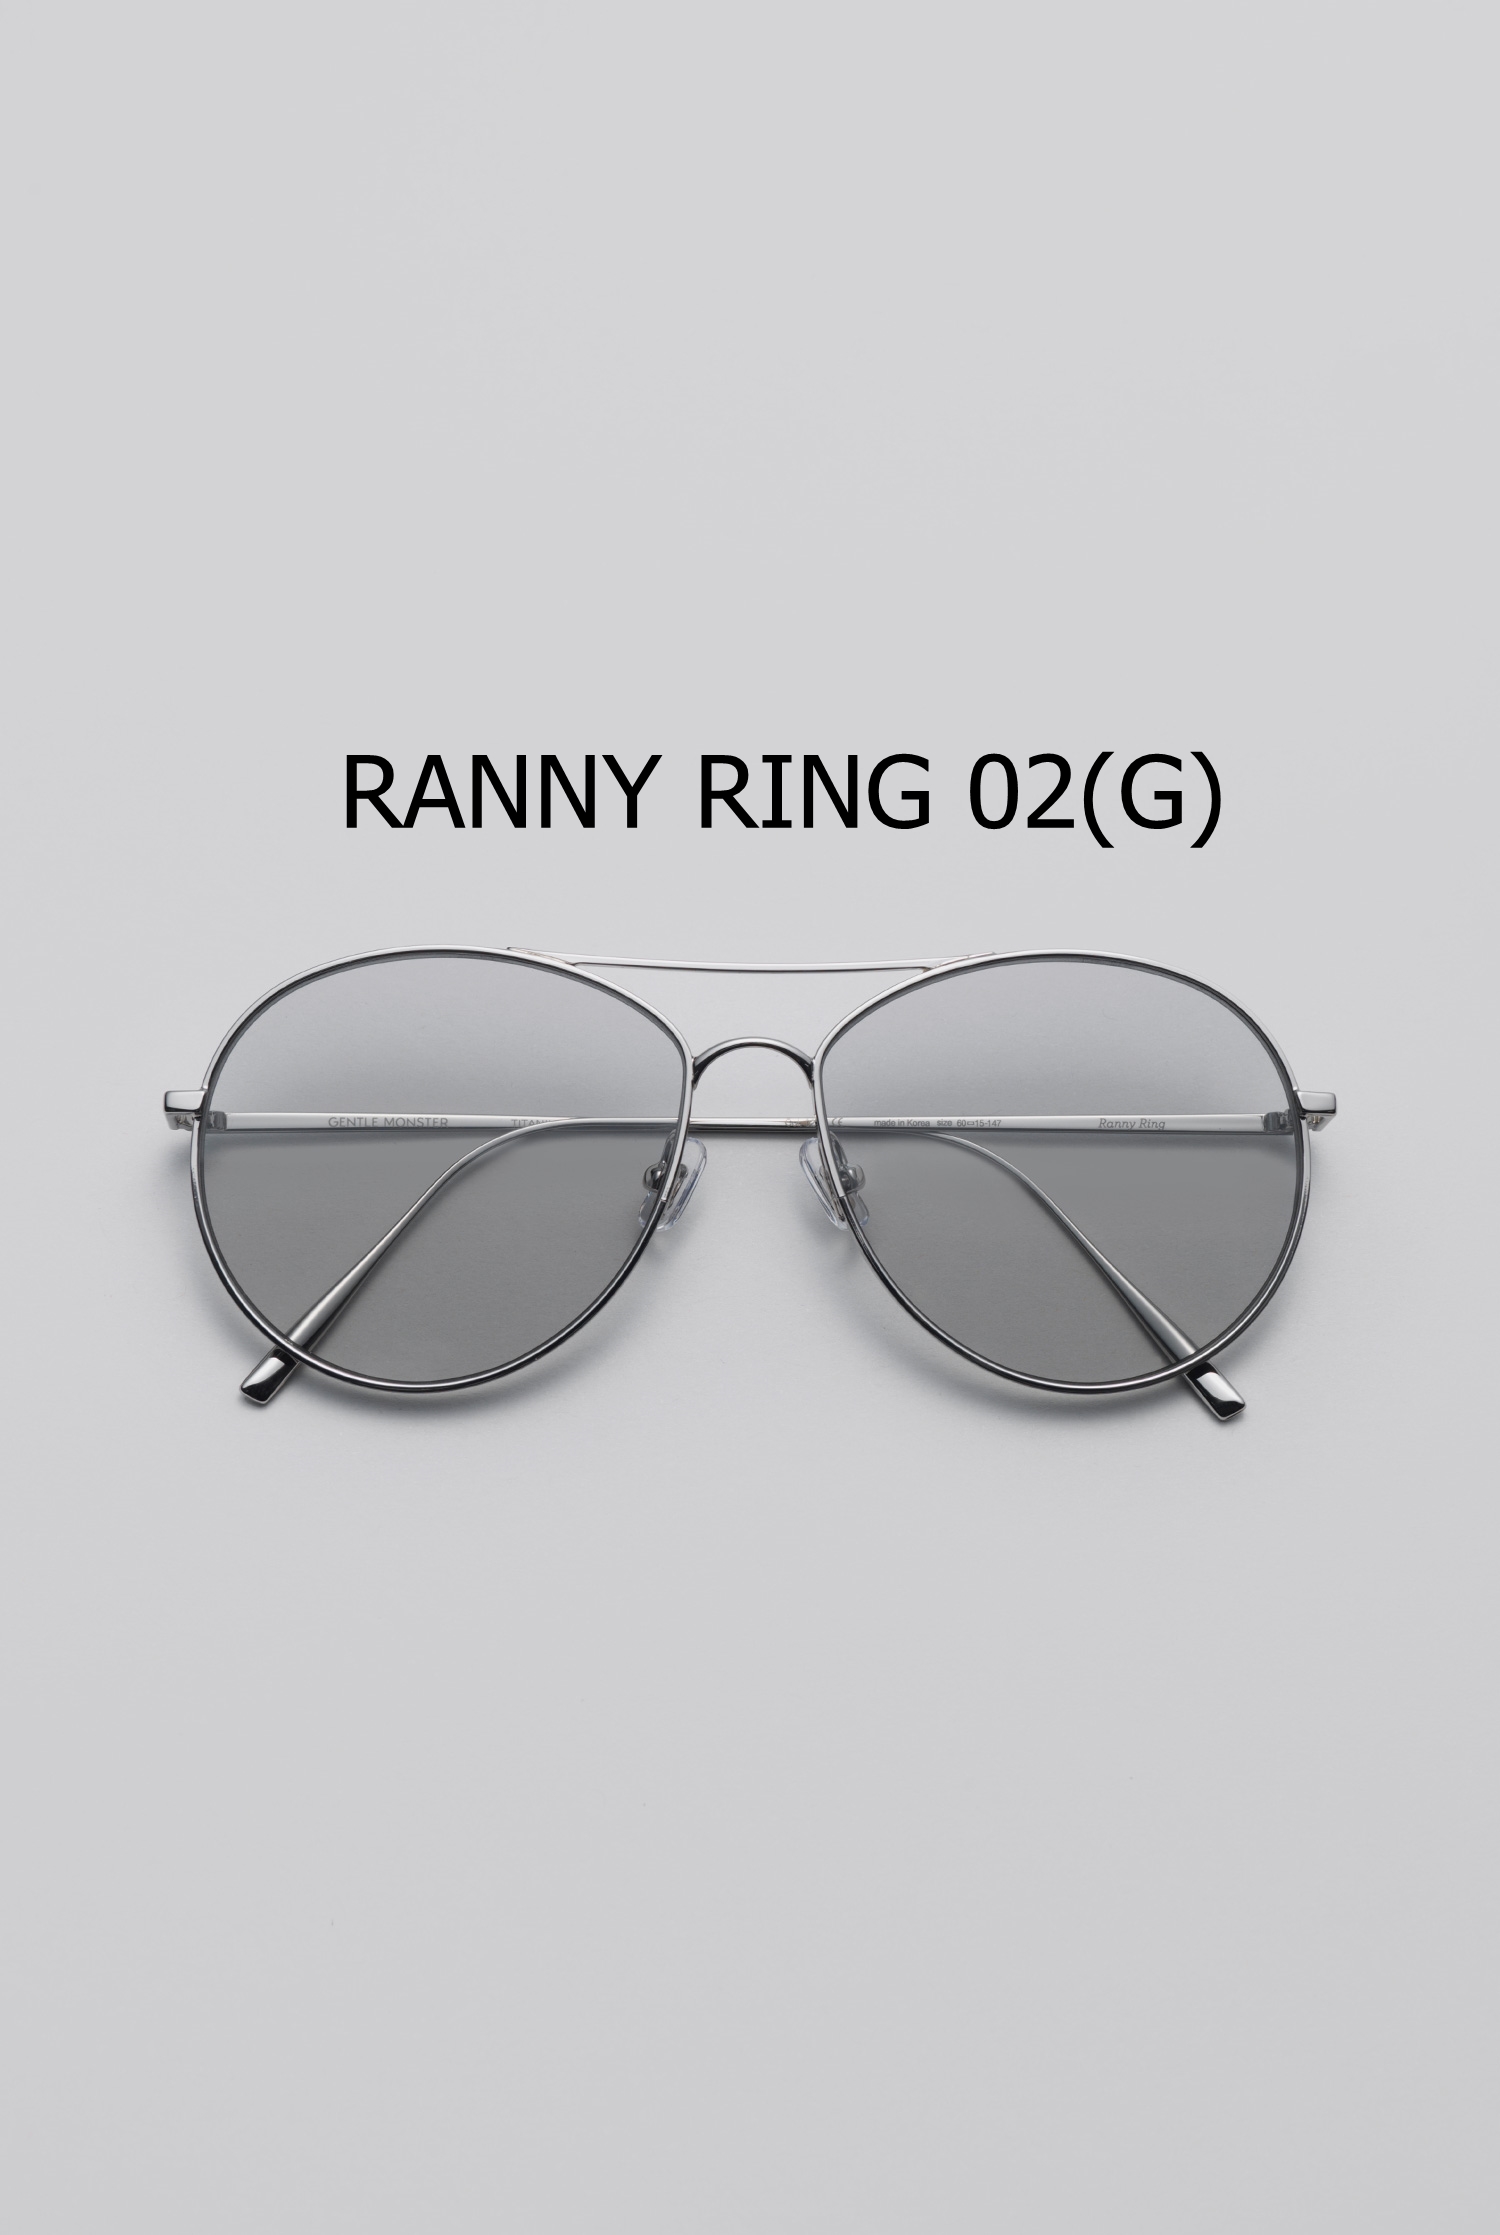 RANNY RING 02(G)